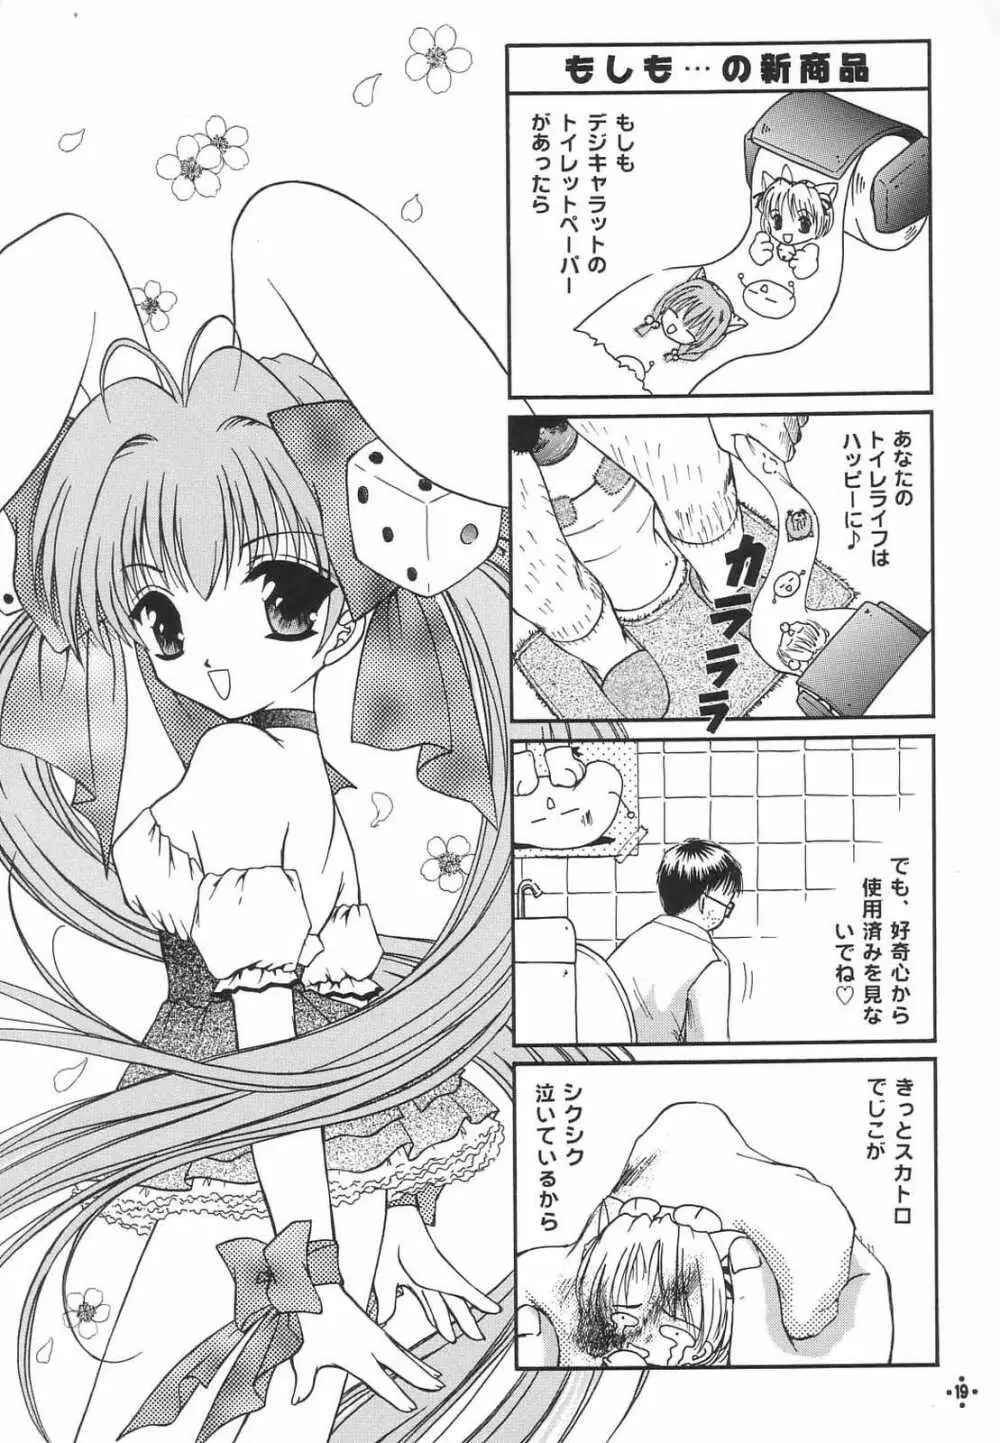 Shimensoka 8 - page18